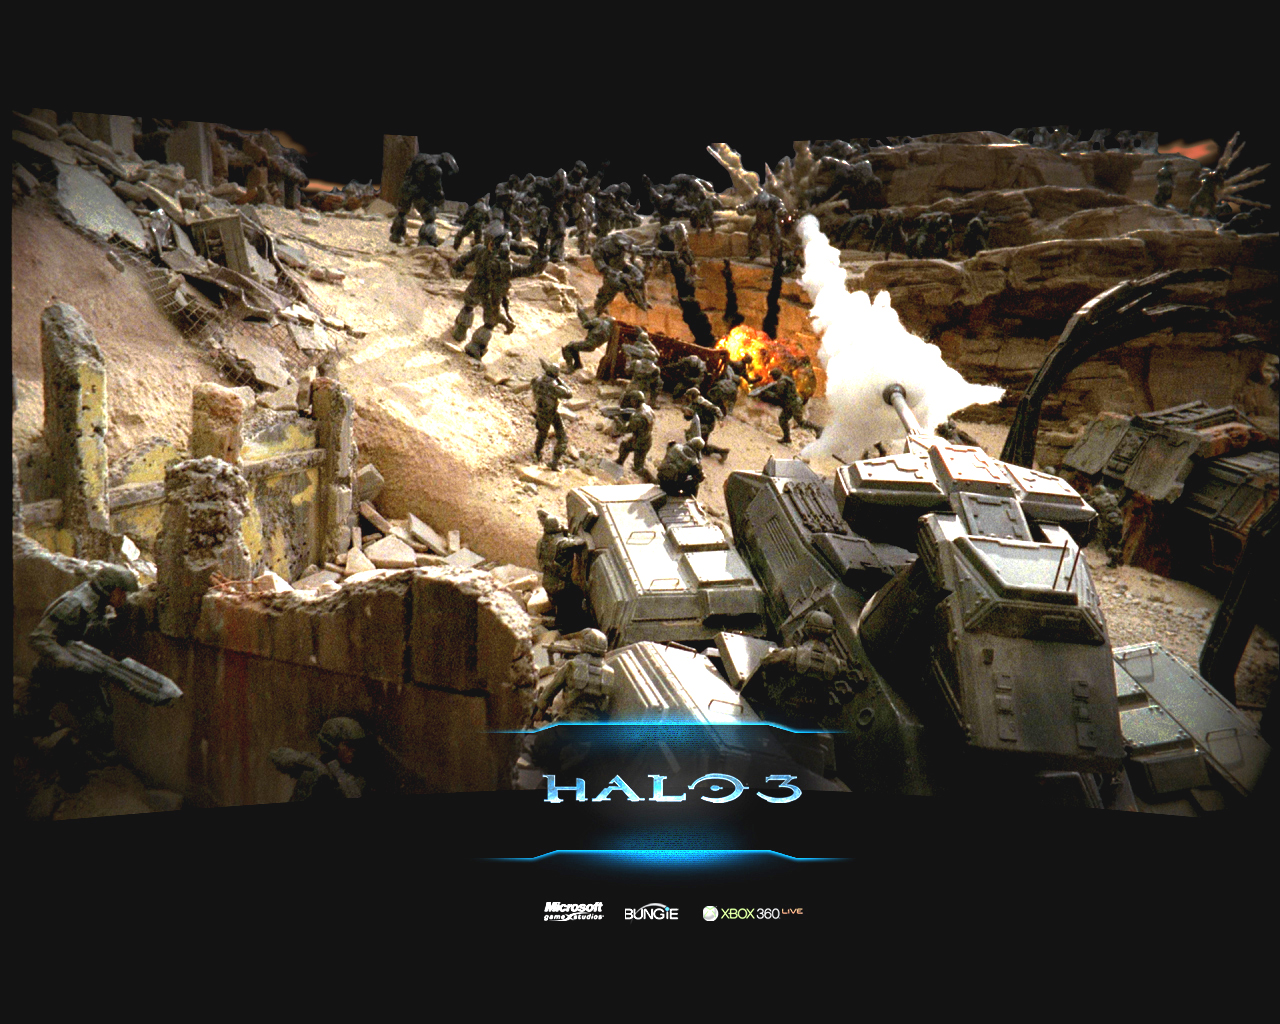 Halo 3 memorial